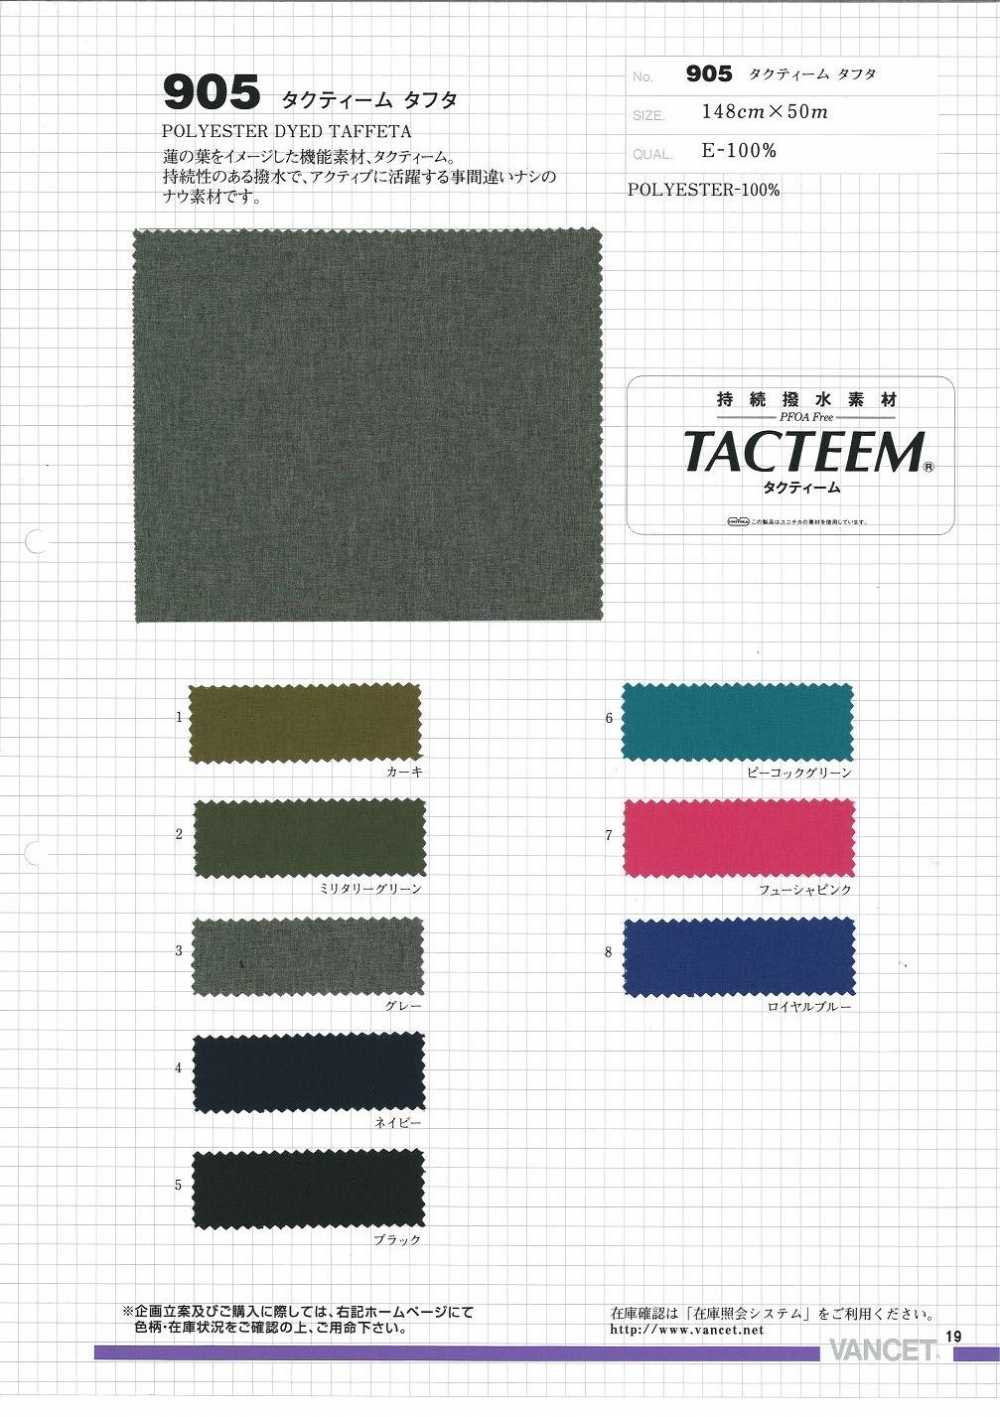 905 Tactim Taft[Textilgewebe] VANCET